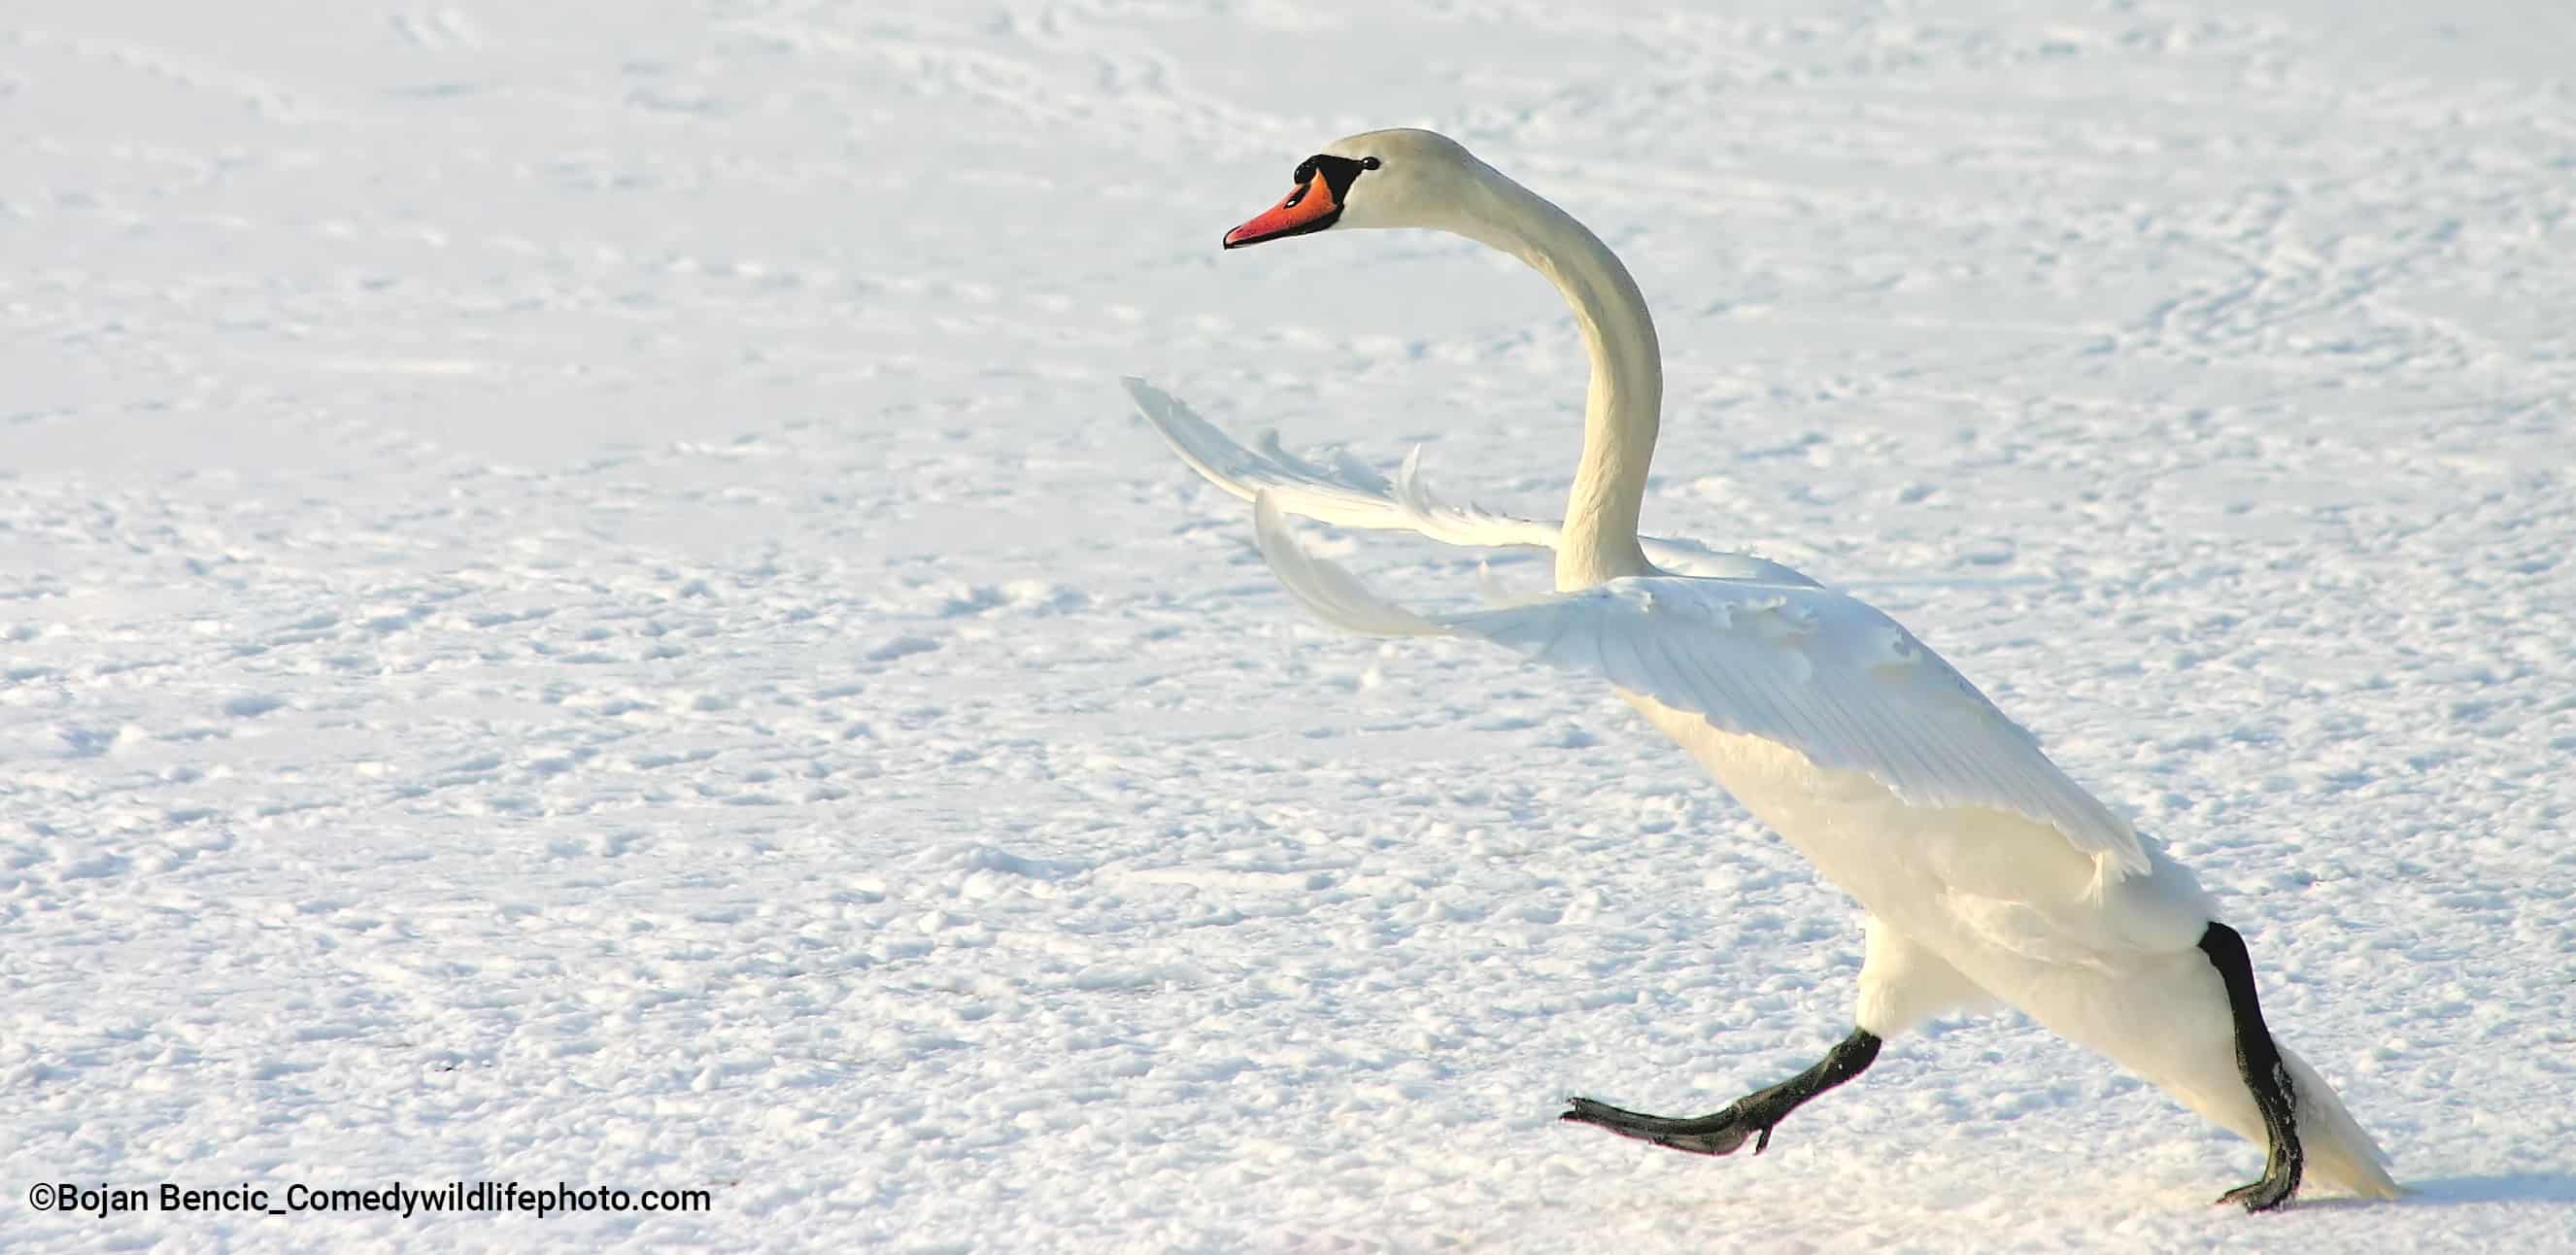 ¡Vaya manera de caminar!. Este cisne estaba en medio de una pelea con otro cisne, persiguiéndolo en un lago congelado.